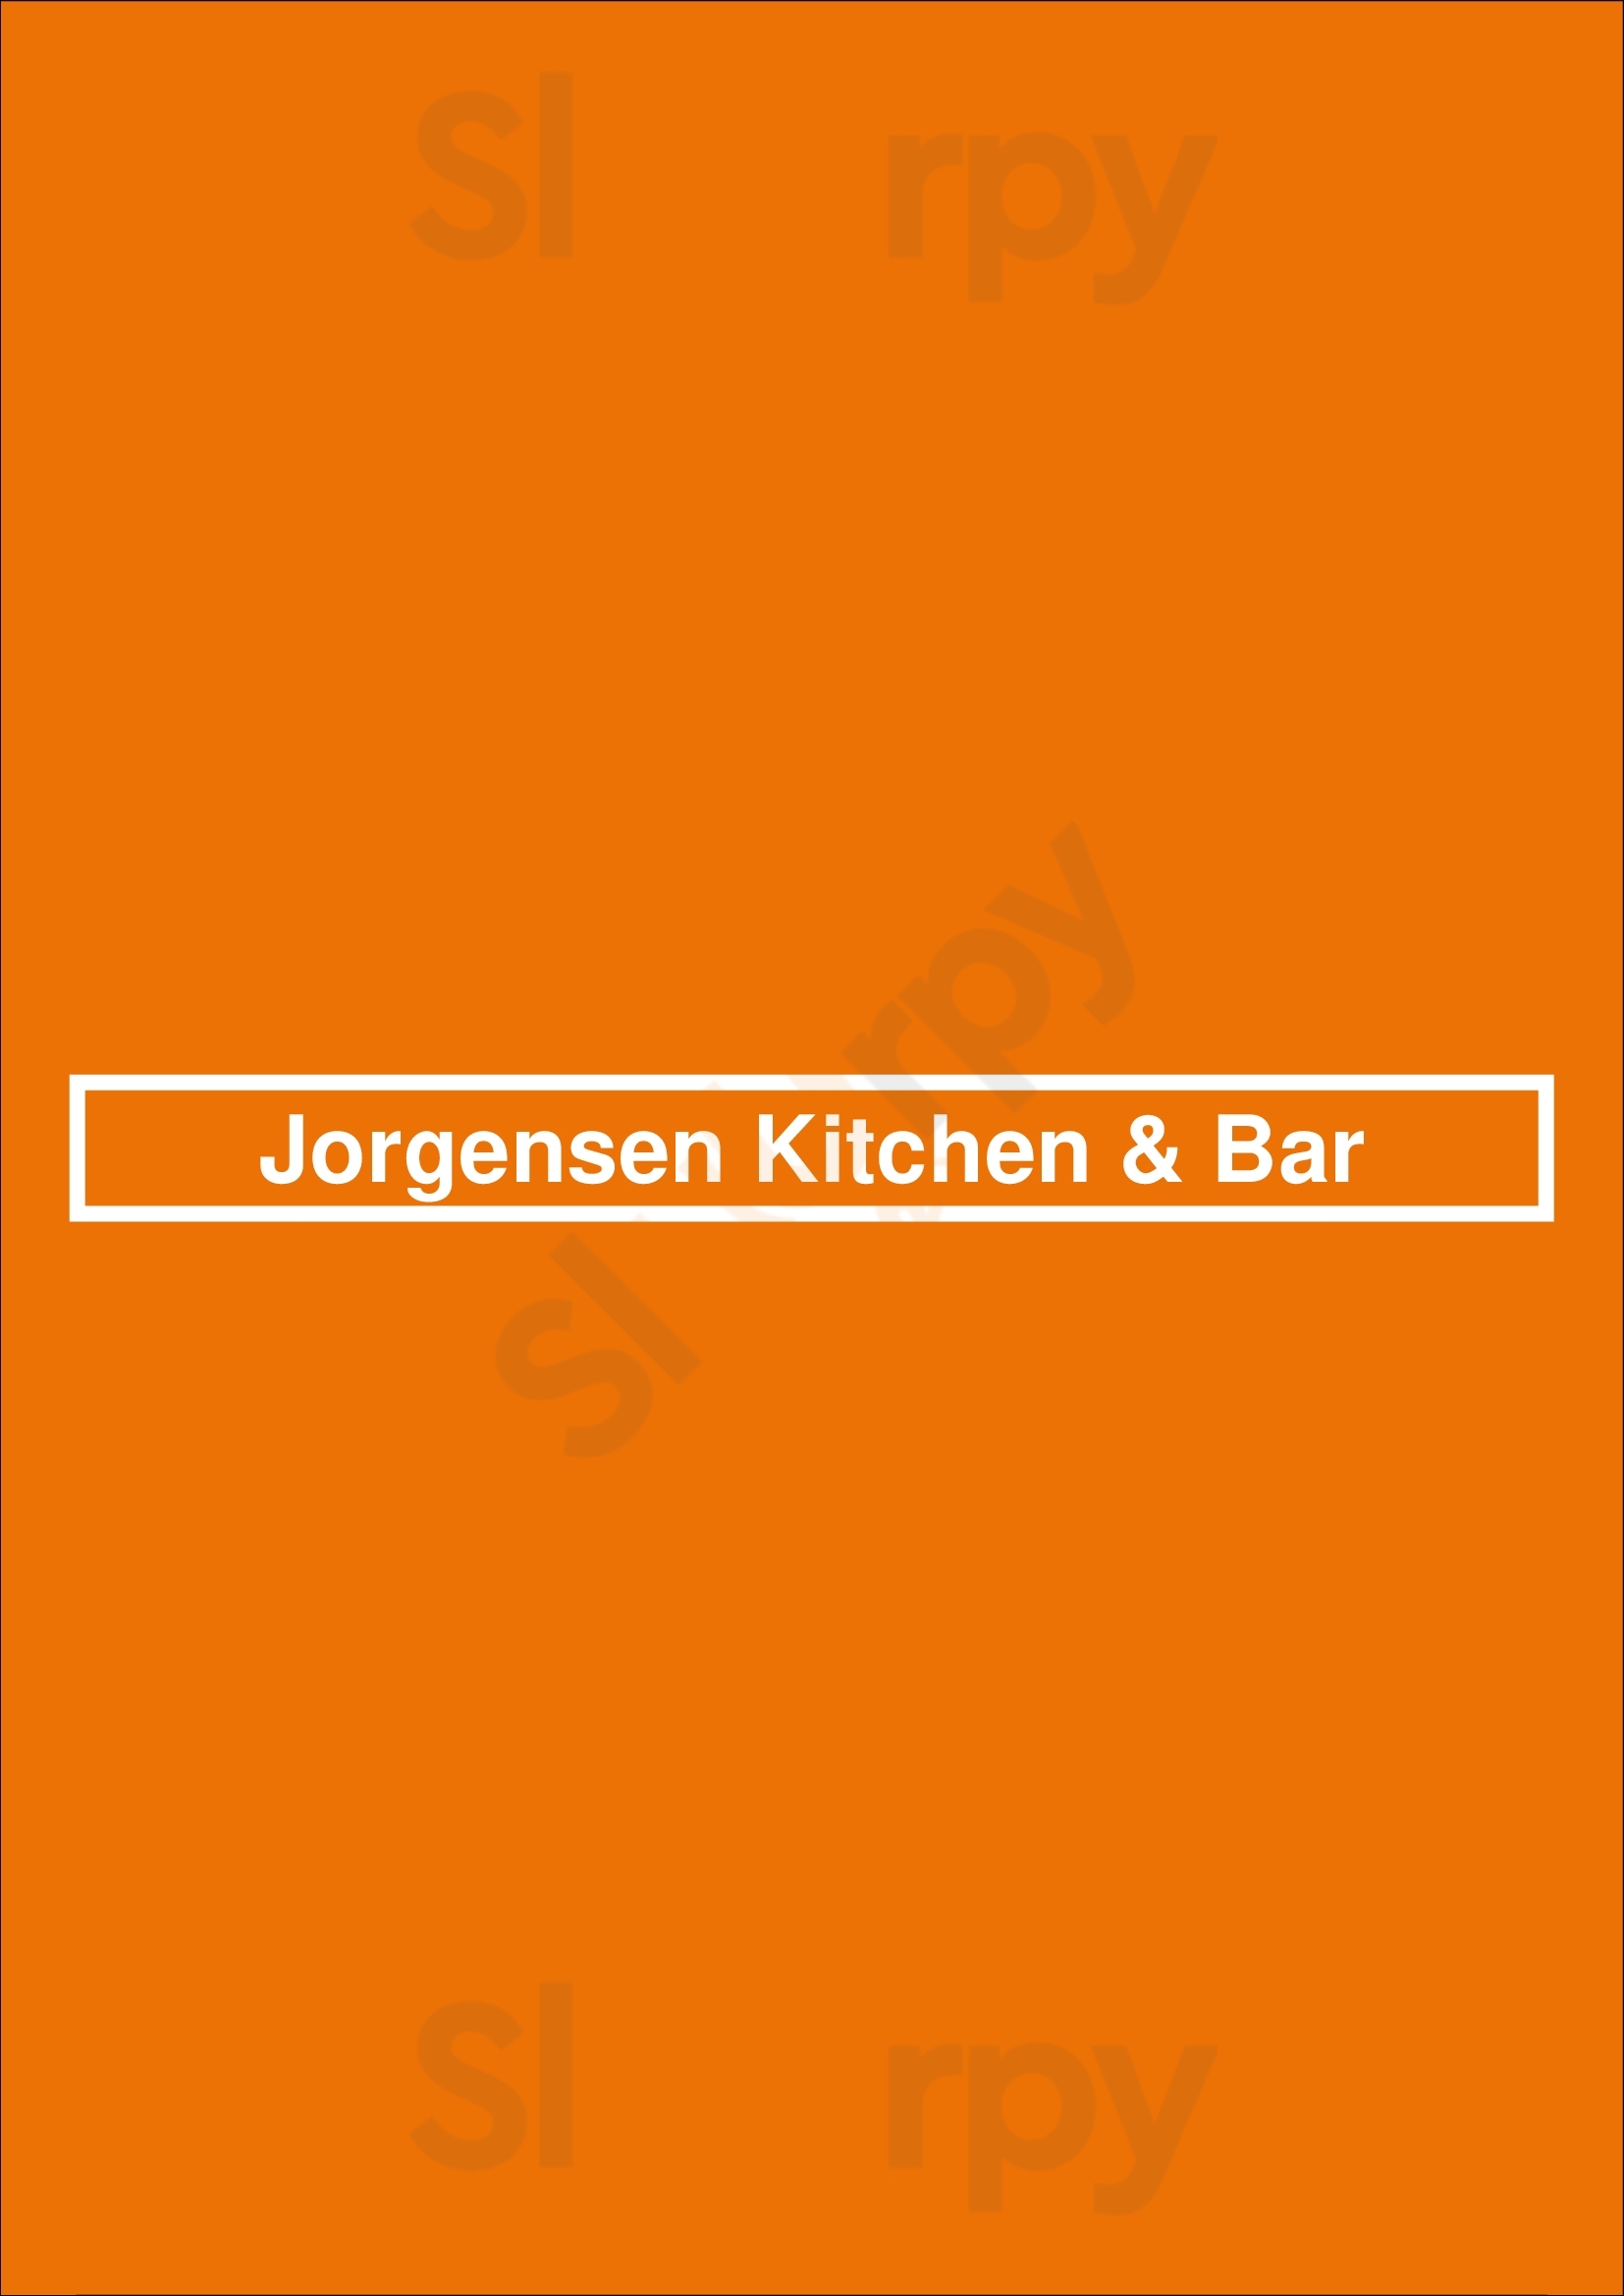 Jorgensen Kitchen & Bar Reykjavik Menu - 1